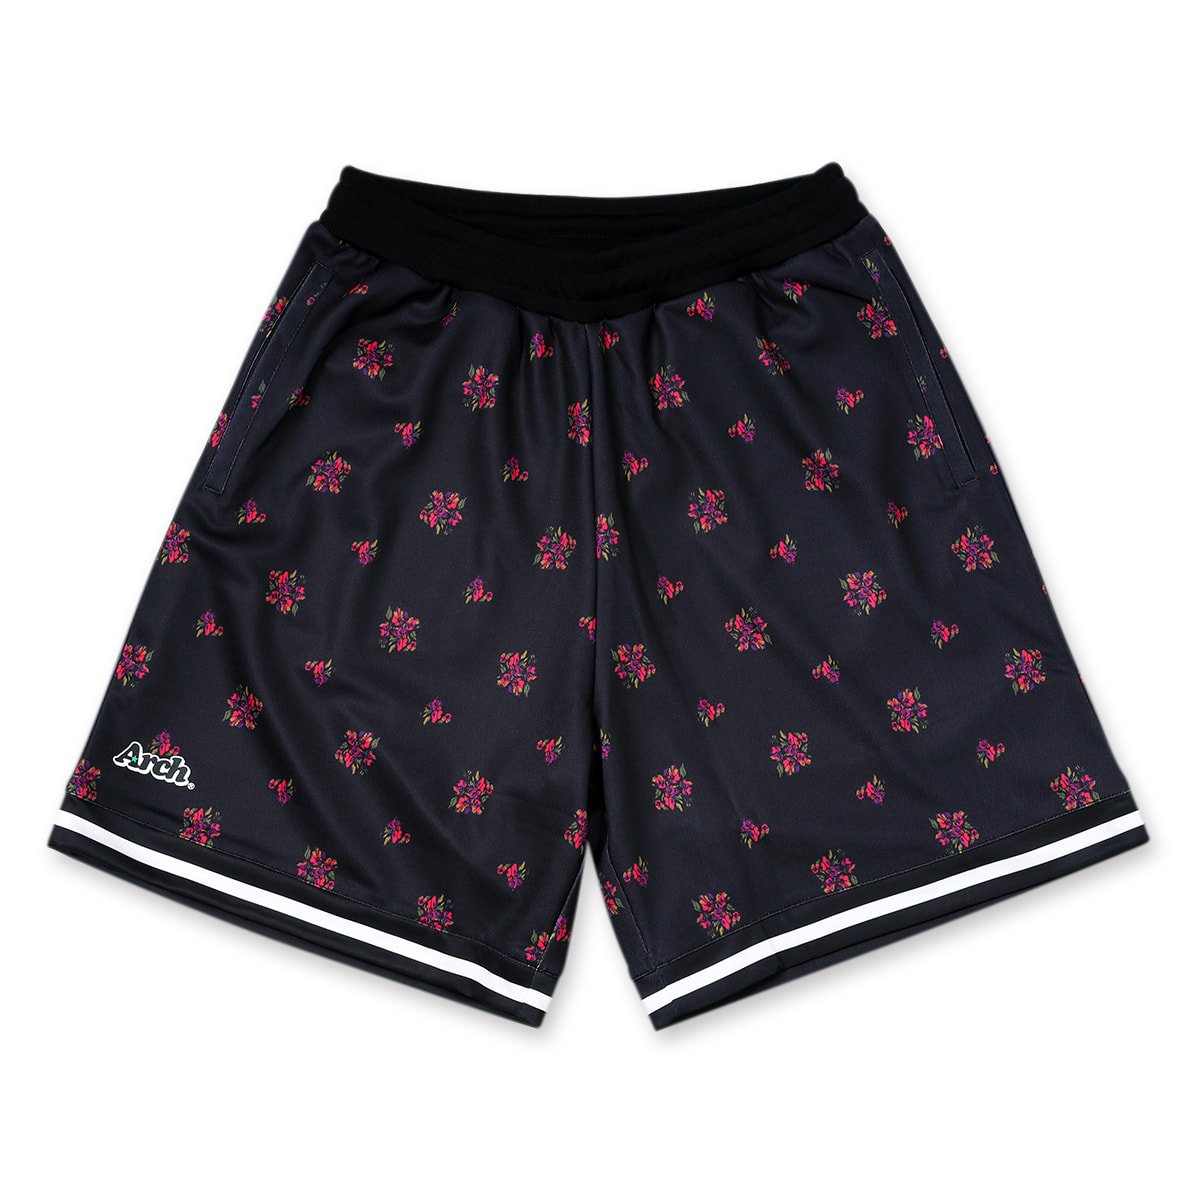 floral sport shorts【black】